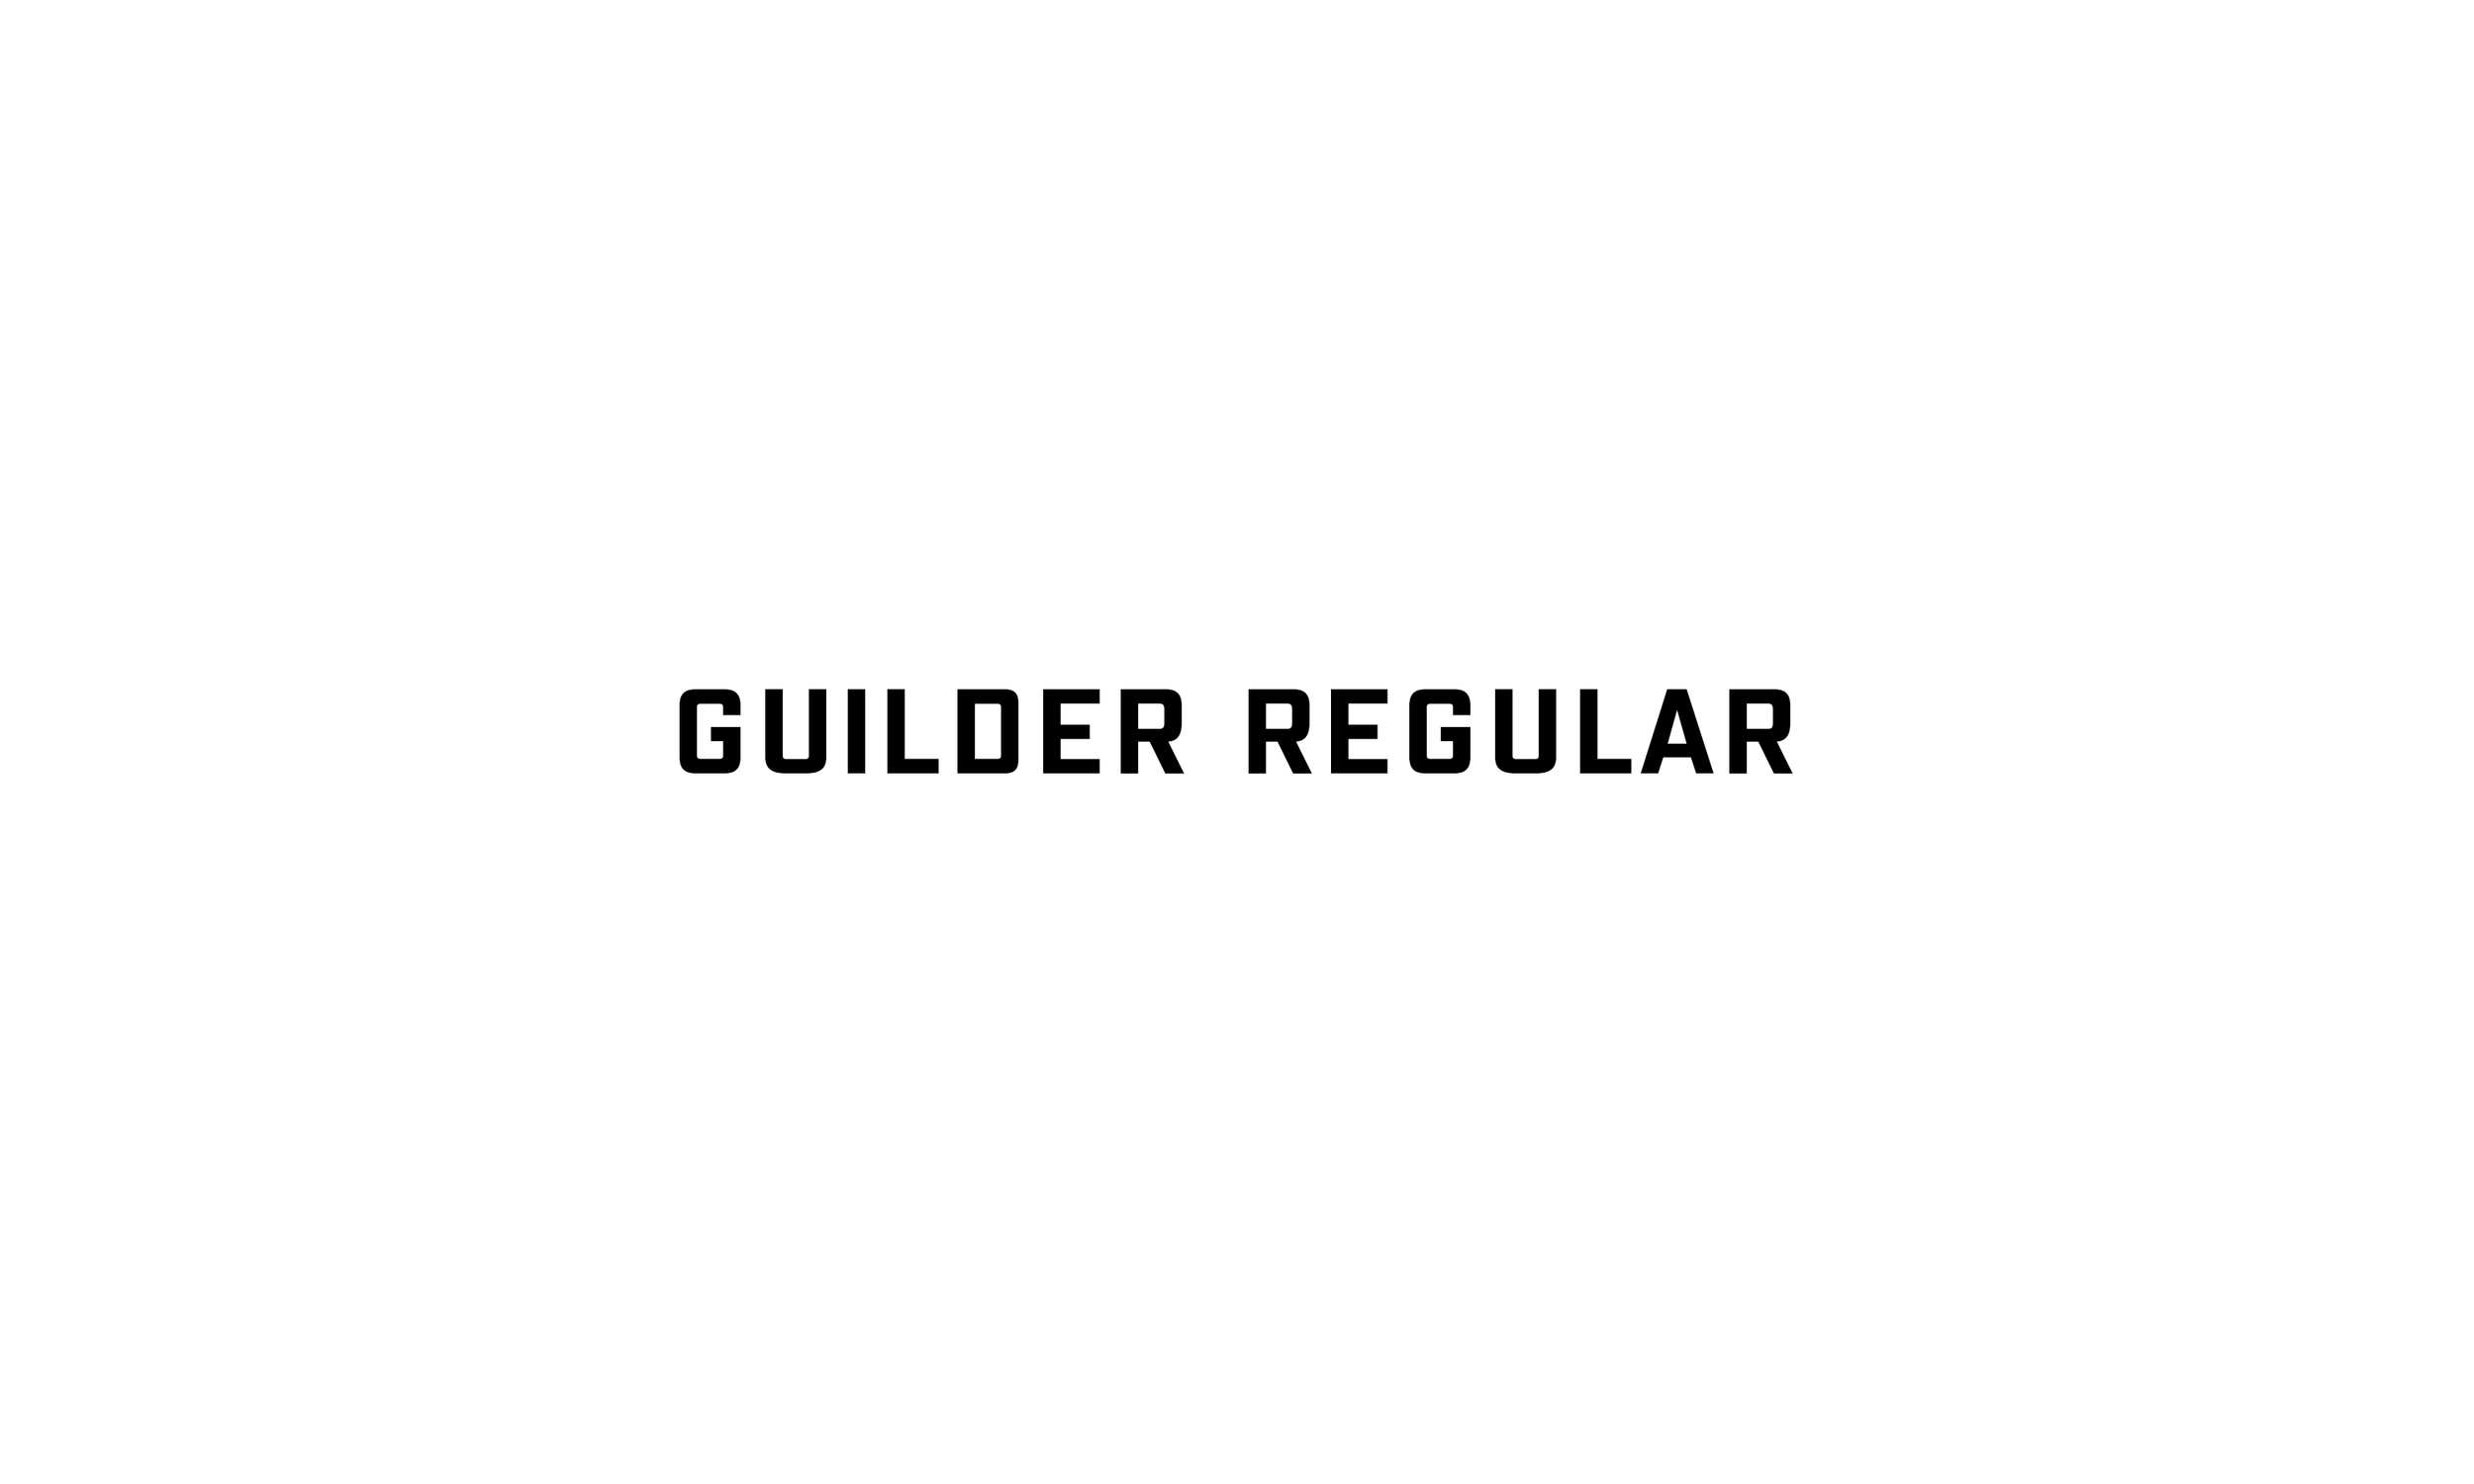 Badson_GuilderRegular_Slides1.jpg